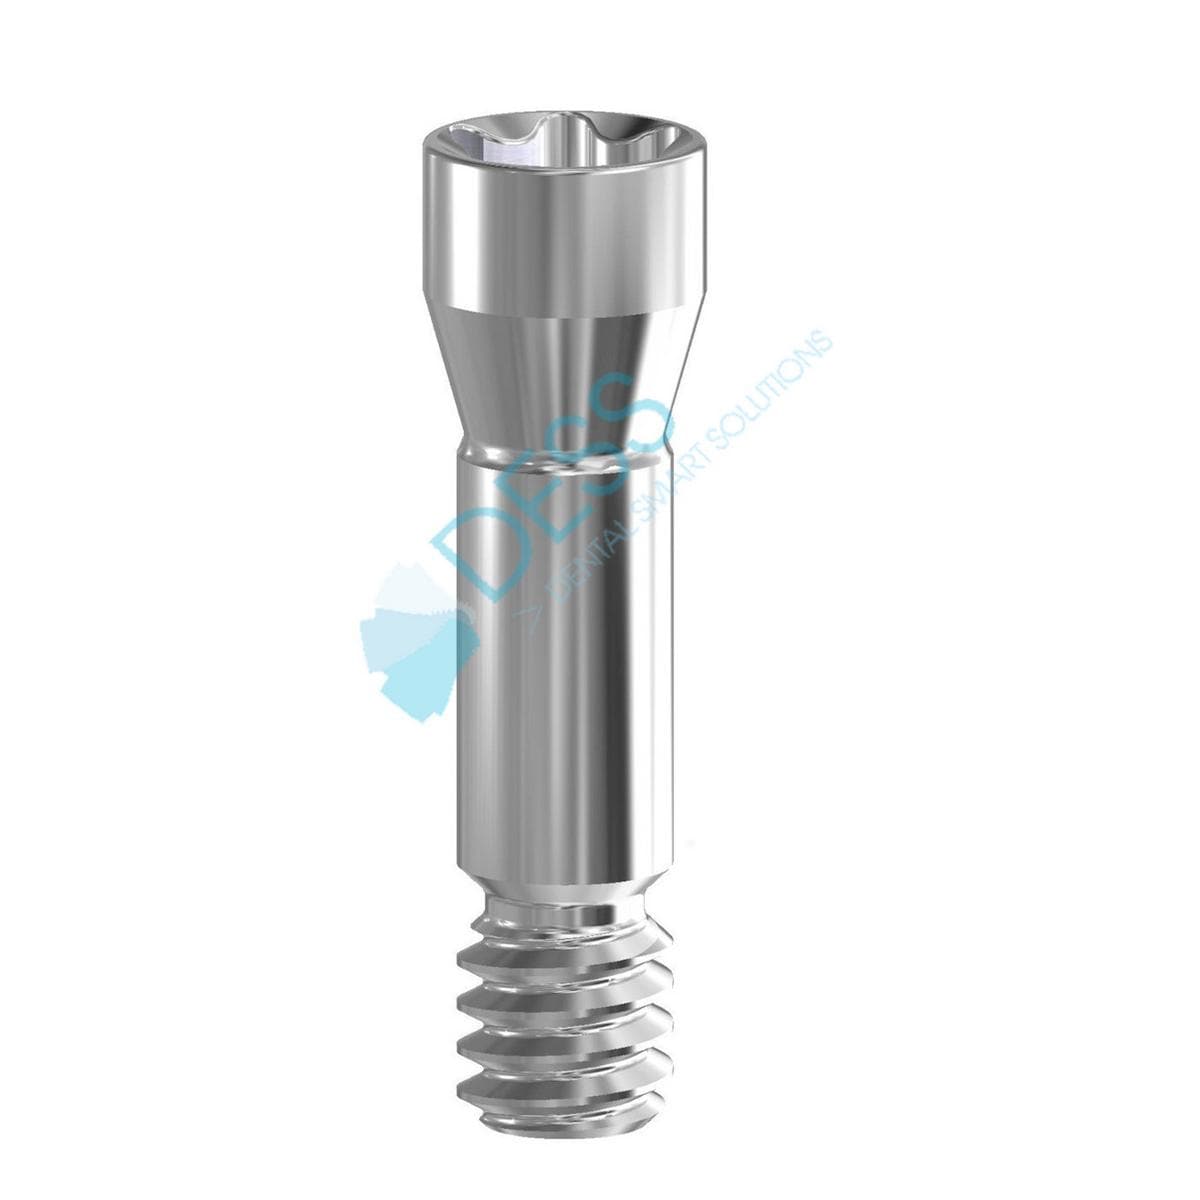 Abutmentschraube Torx® auf Implantat - kompatibel mit Straumann® Bone Level® - NC Ø 3,3 / RC Ø 4,1 mm, Packung 10 Stück